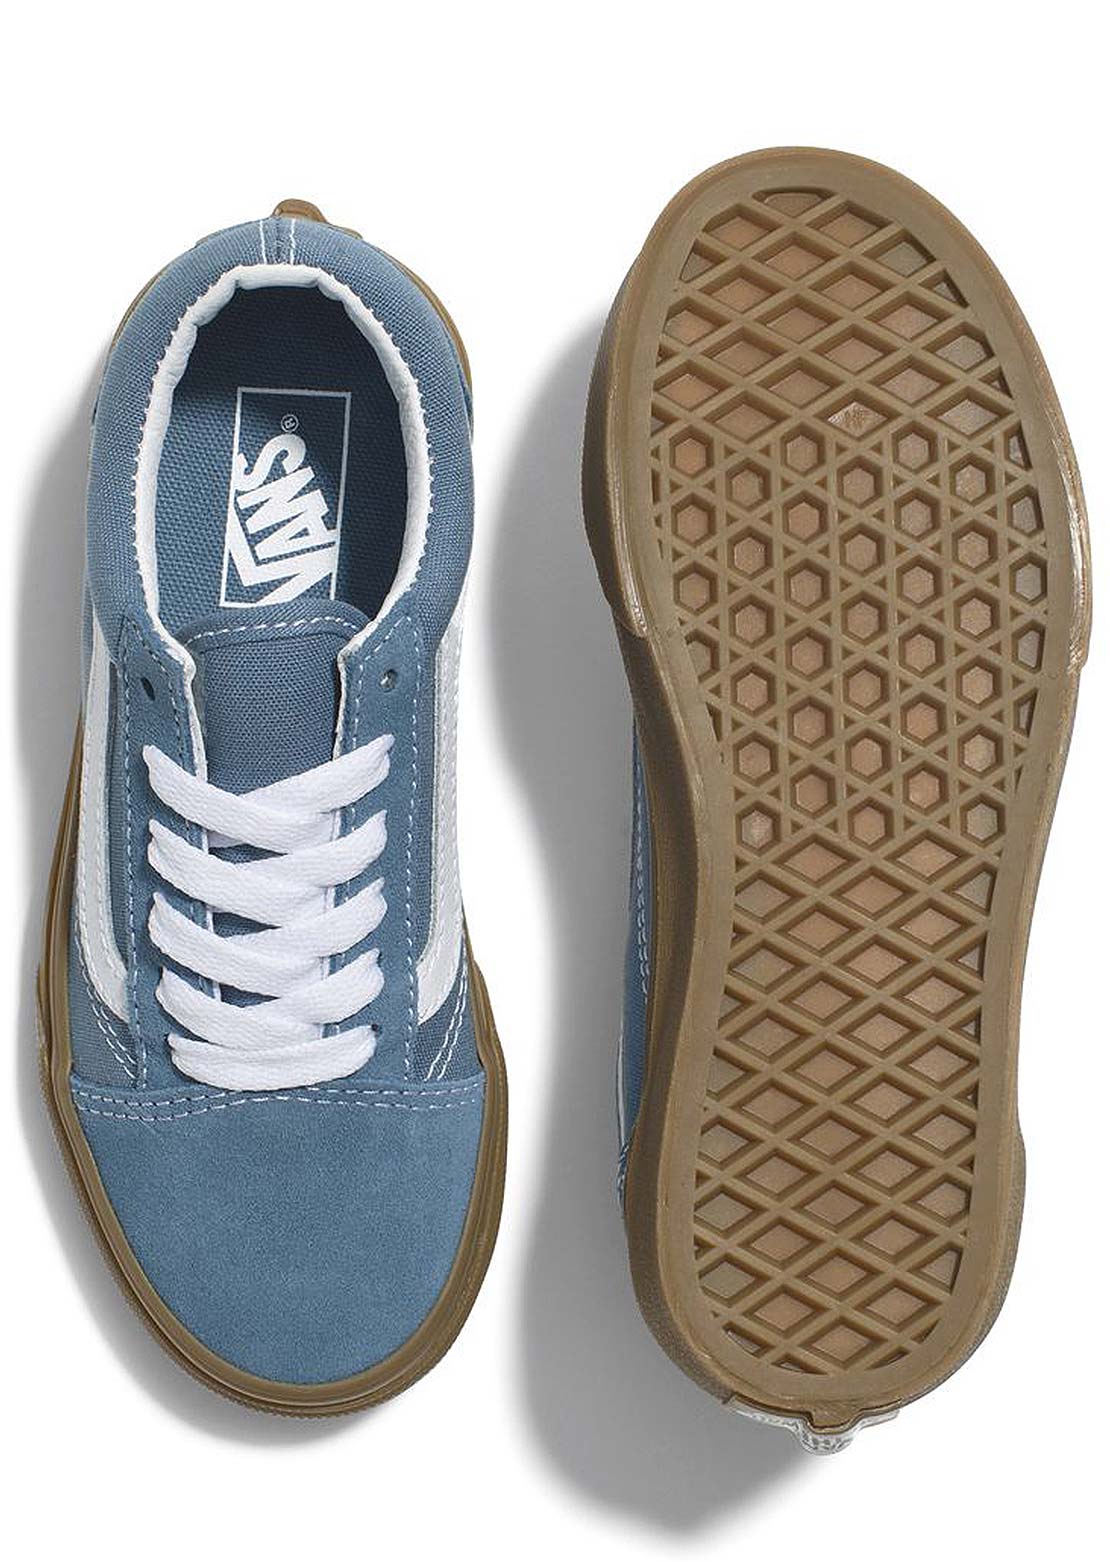 Vans Junior Old Skool Shoes Blue/True White